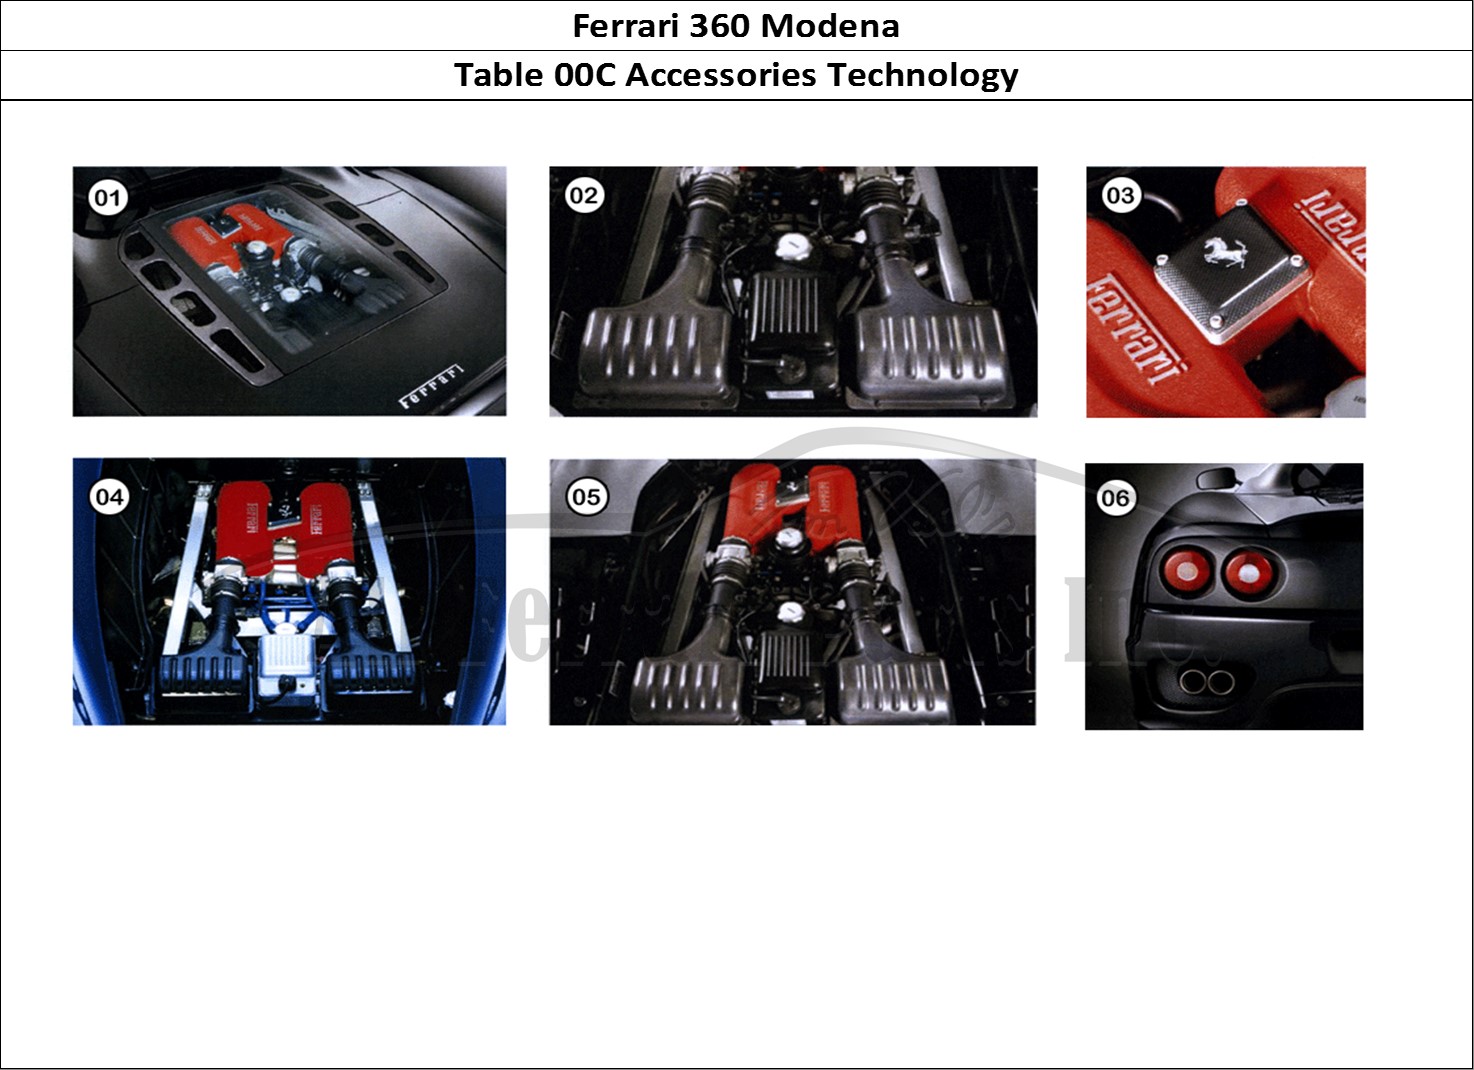 Ferrari Parts Ferrari 360 Modena Page 00c Accessories - Technology